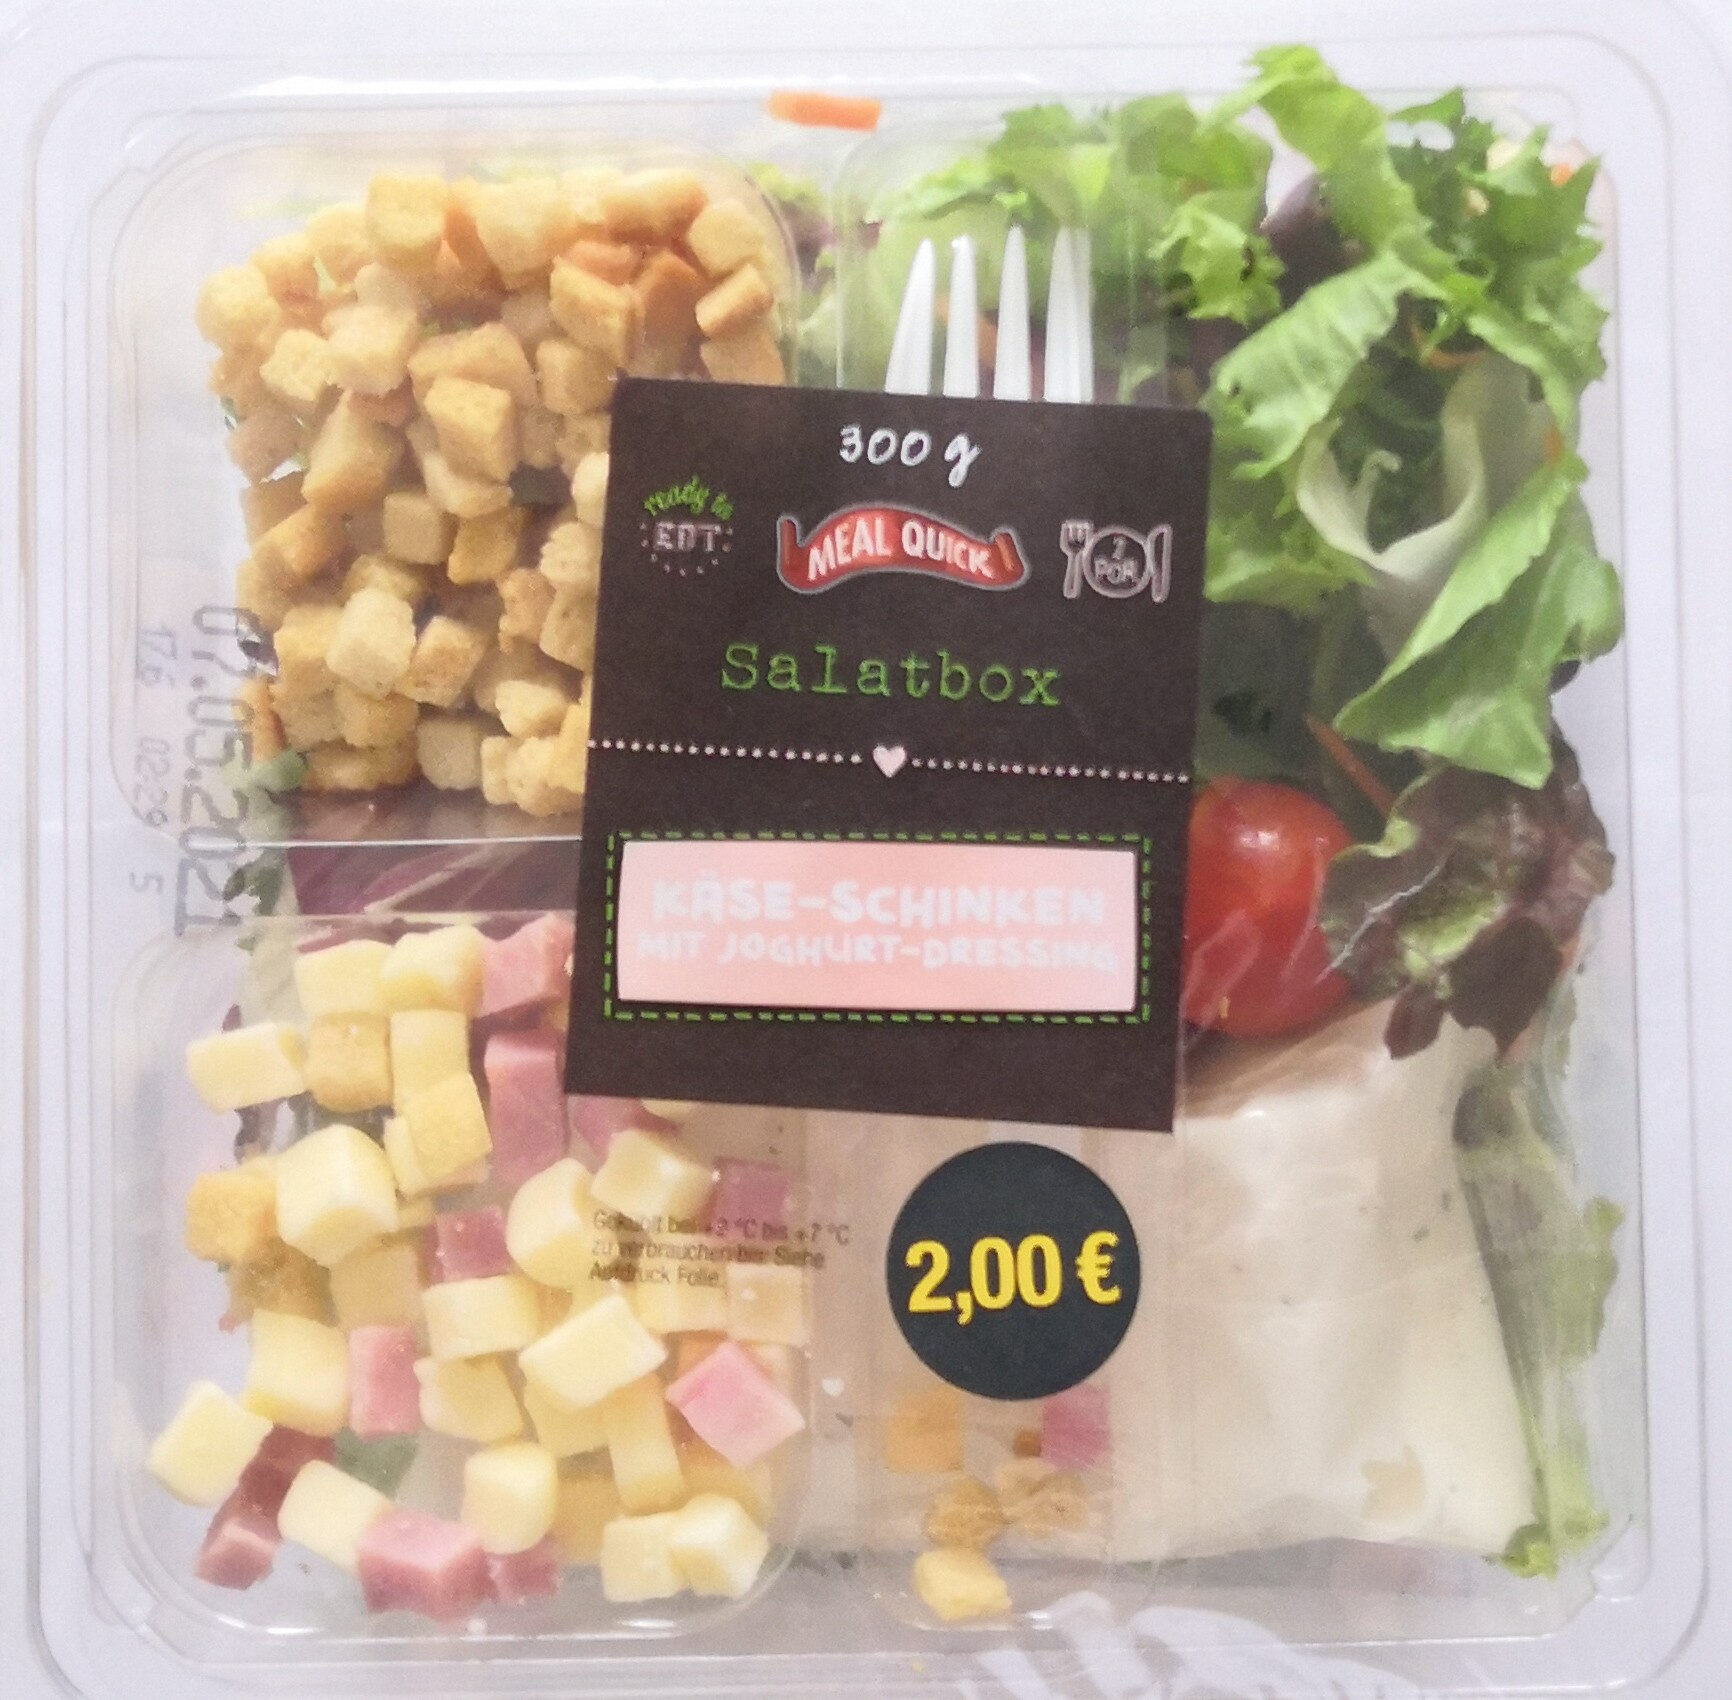 Meal Quick Salatbox Käse-Schinken mit Joghurt-Dressing - Product - de